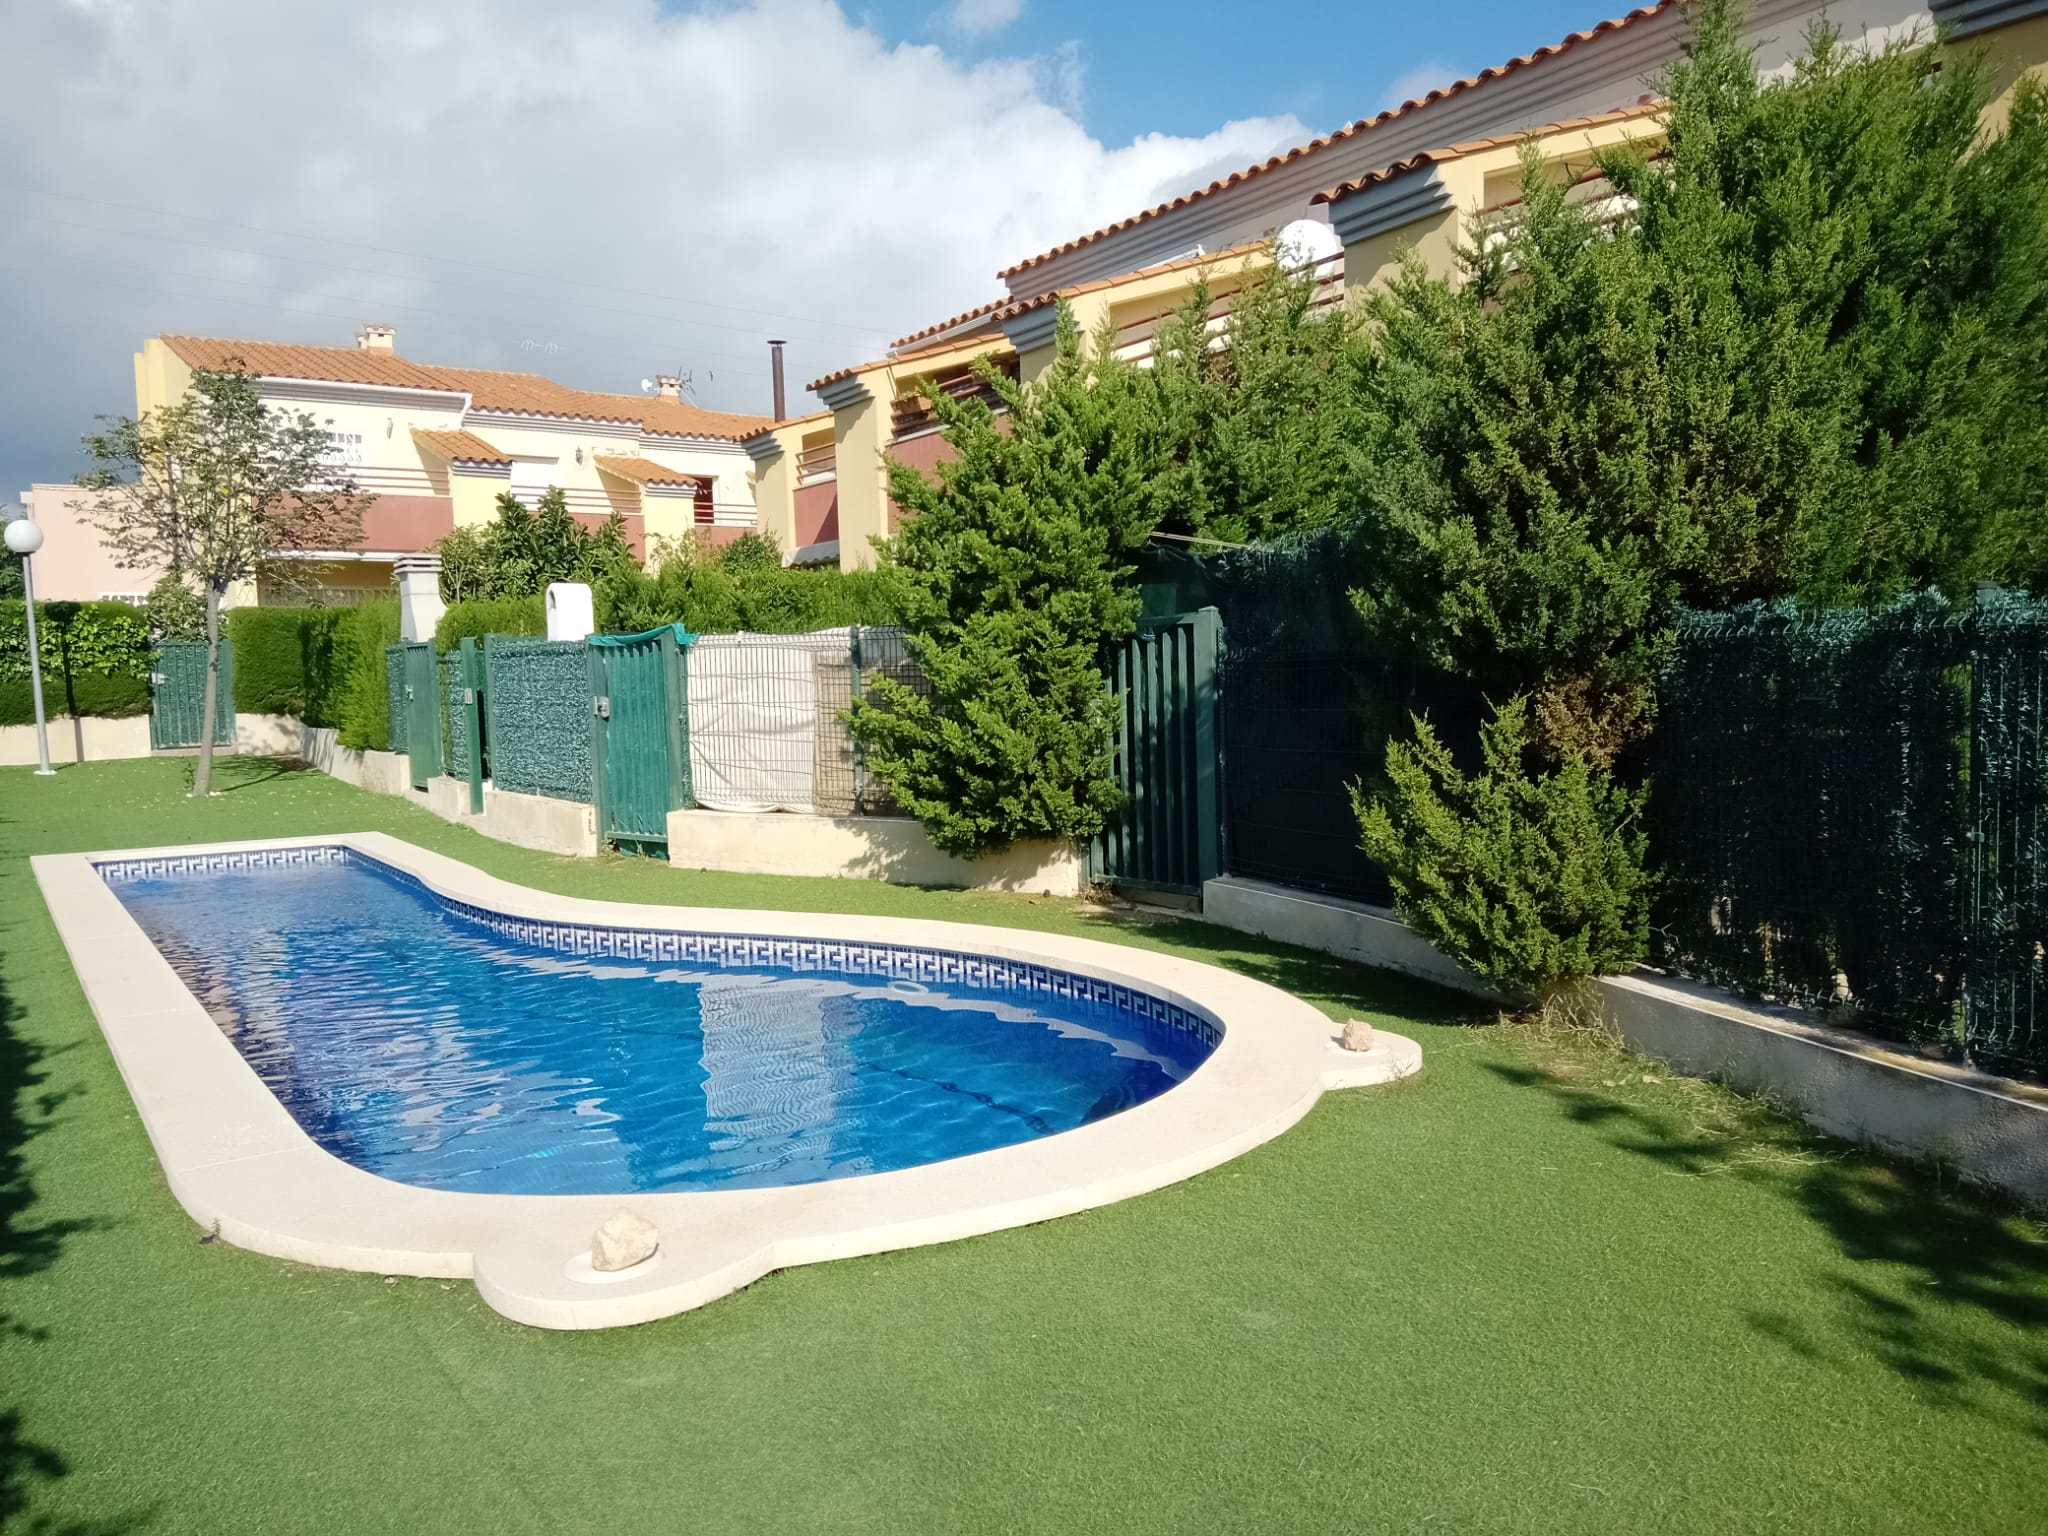 Casa adosada 105 m2 en zona céntrica y tranquila, con piscina comunitaria